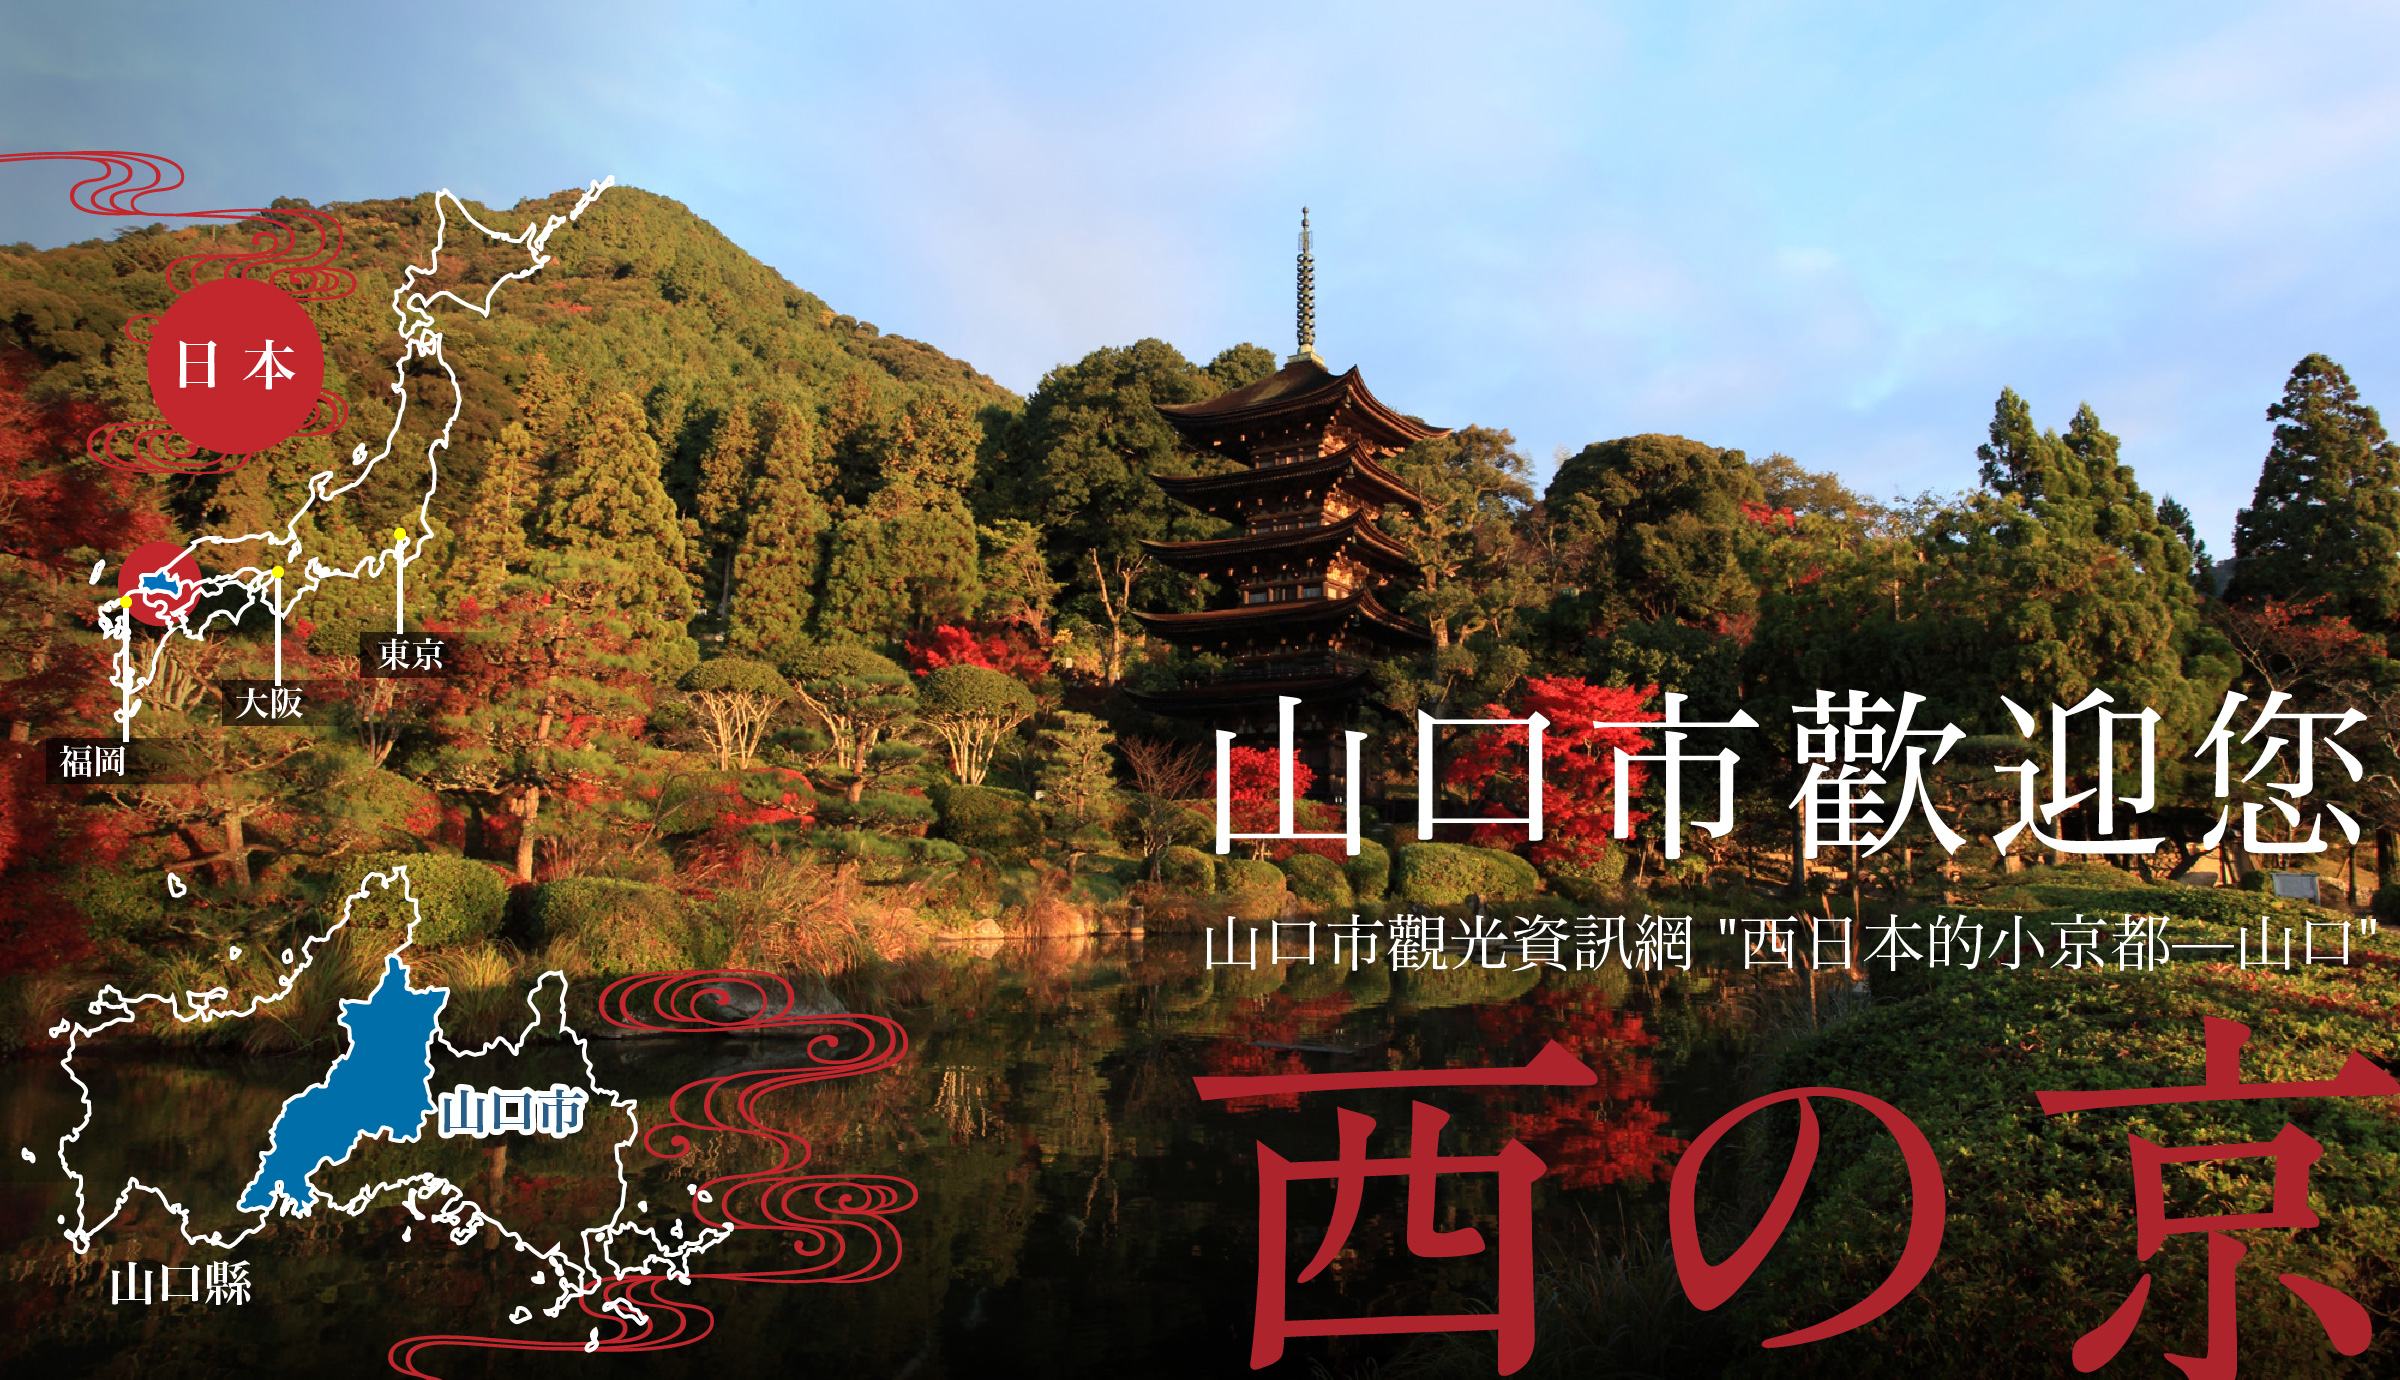 山口市歡迎您 山口市觀光資訊網 西日本的小京都—山口